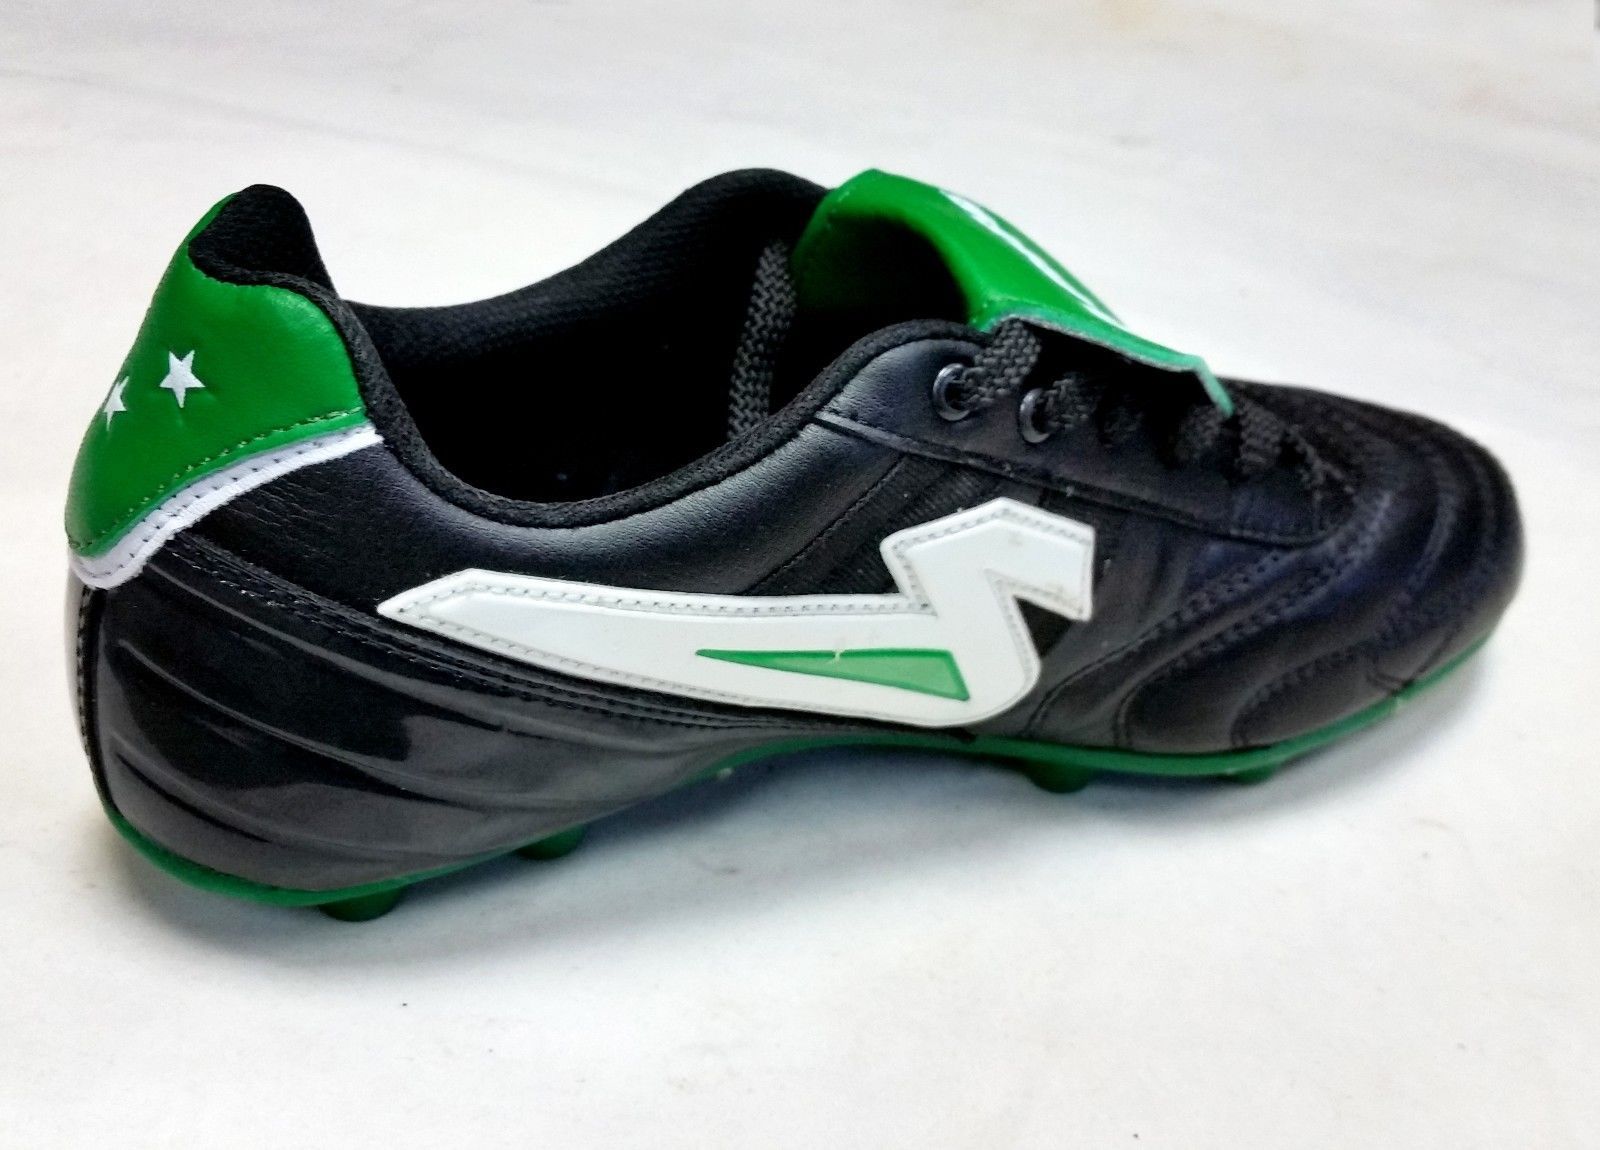 olmeca soccer shoes